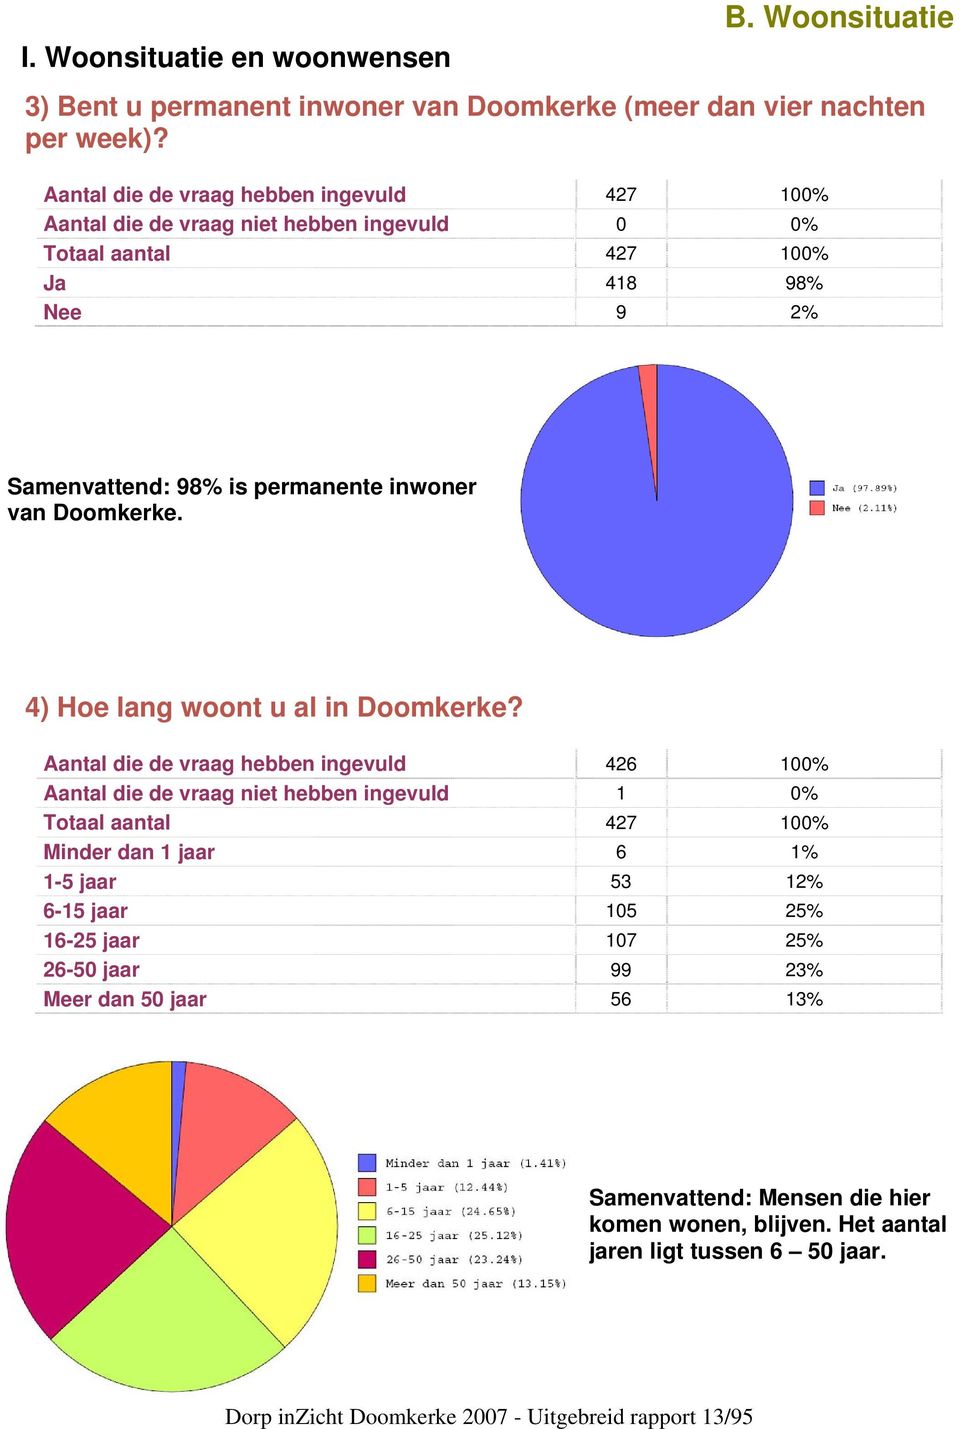 4) Hoe lang woont u al in Doomkerke?